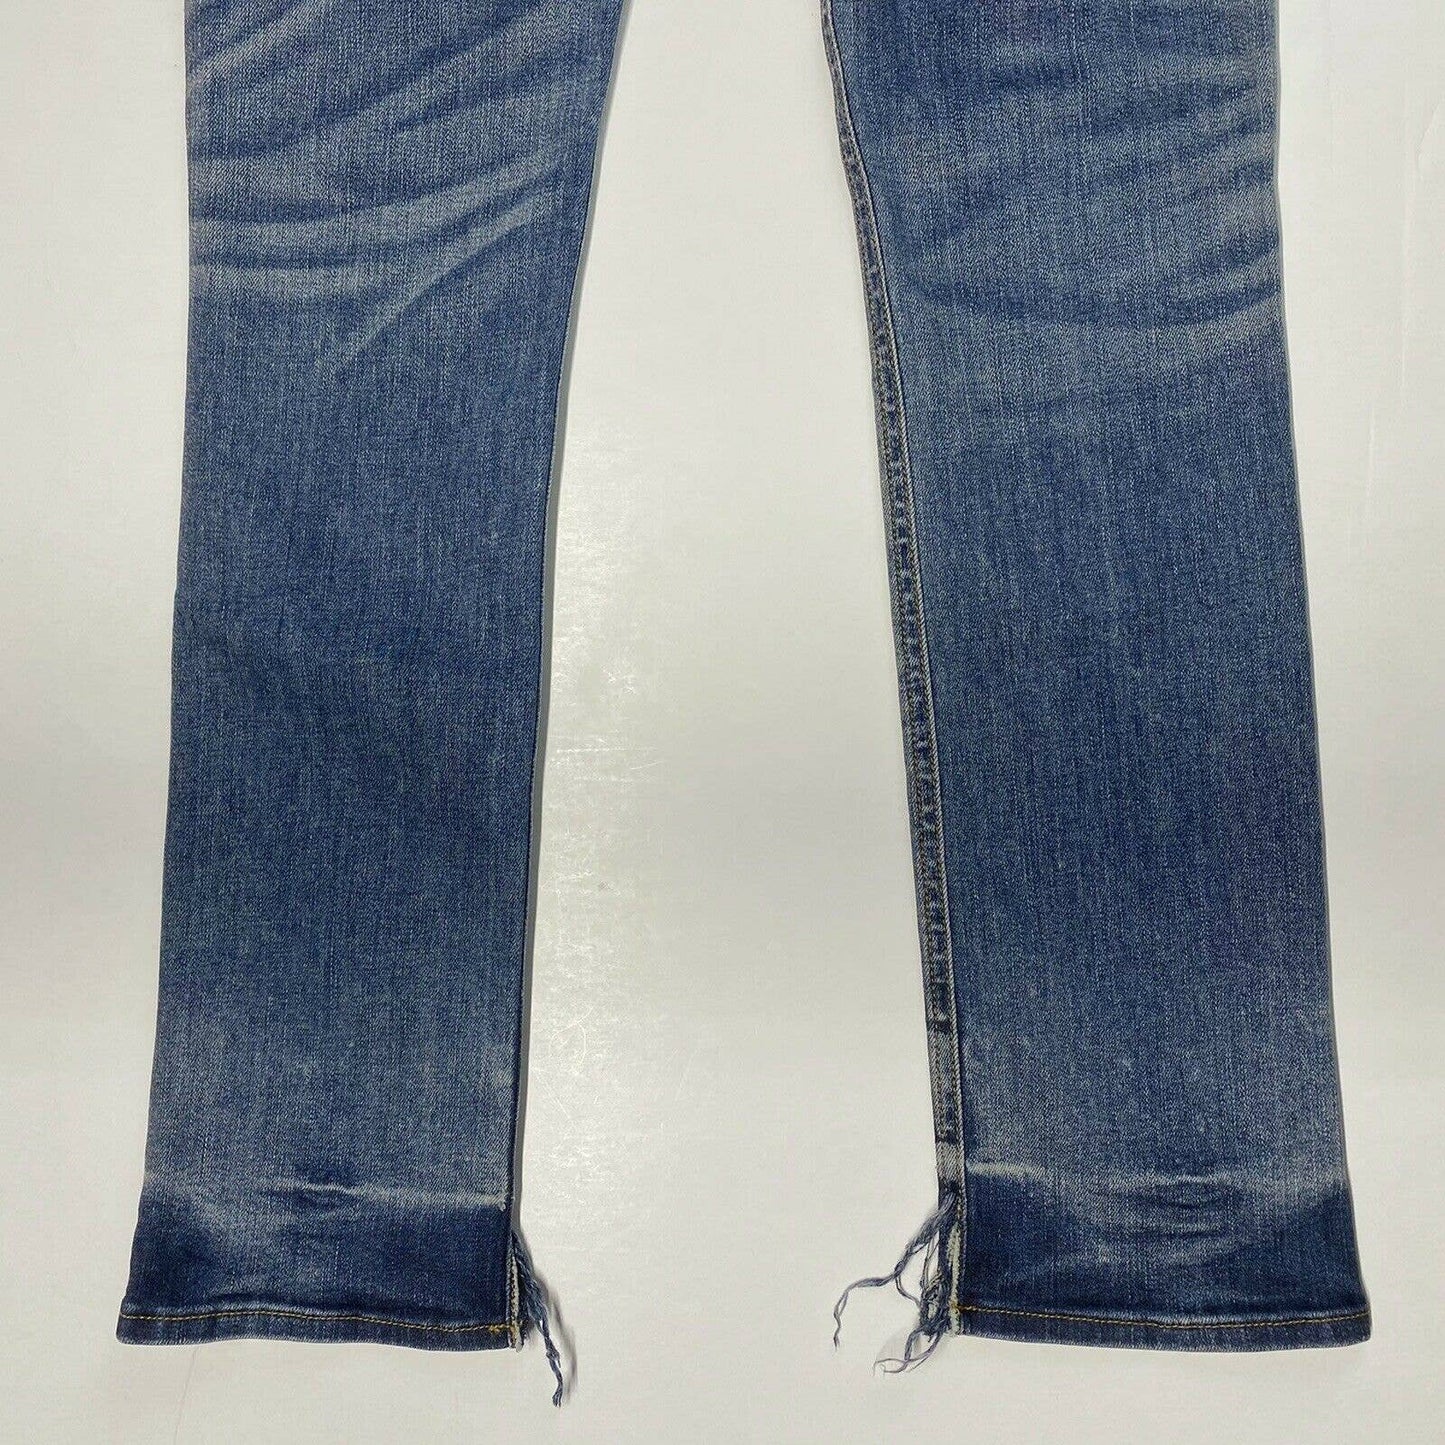 Rag & Bone Crop Sz 24 (28"Waist) Lowrise Stretch Denim Blue Skinny Jeans EUC